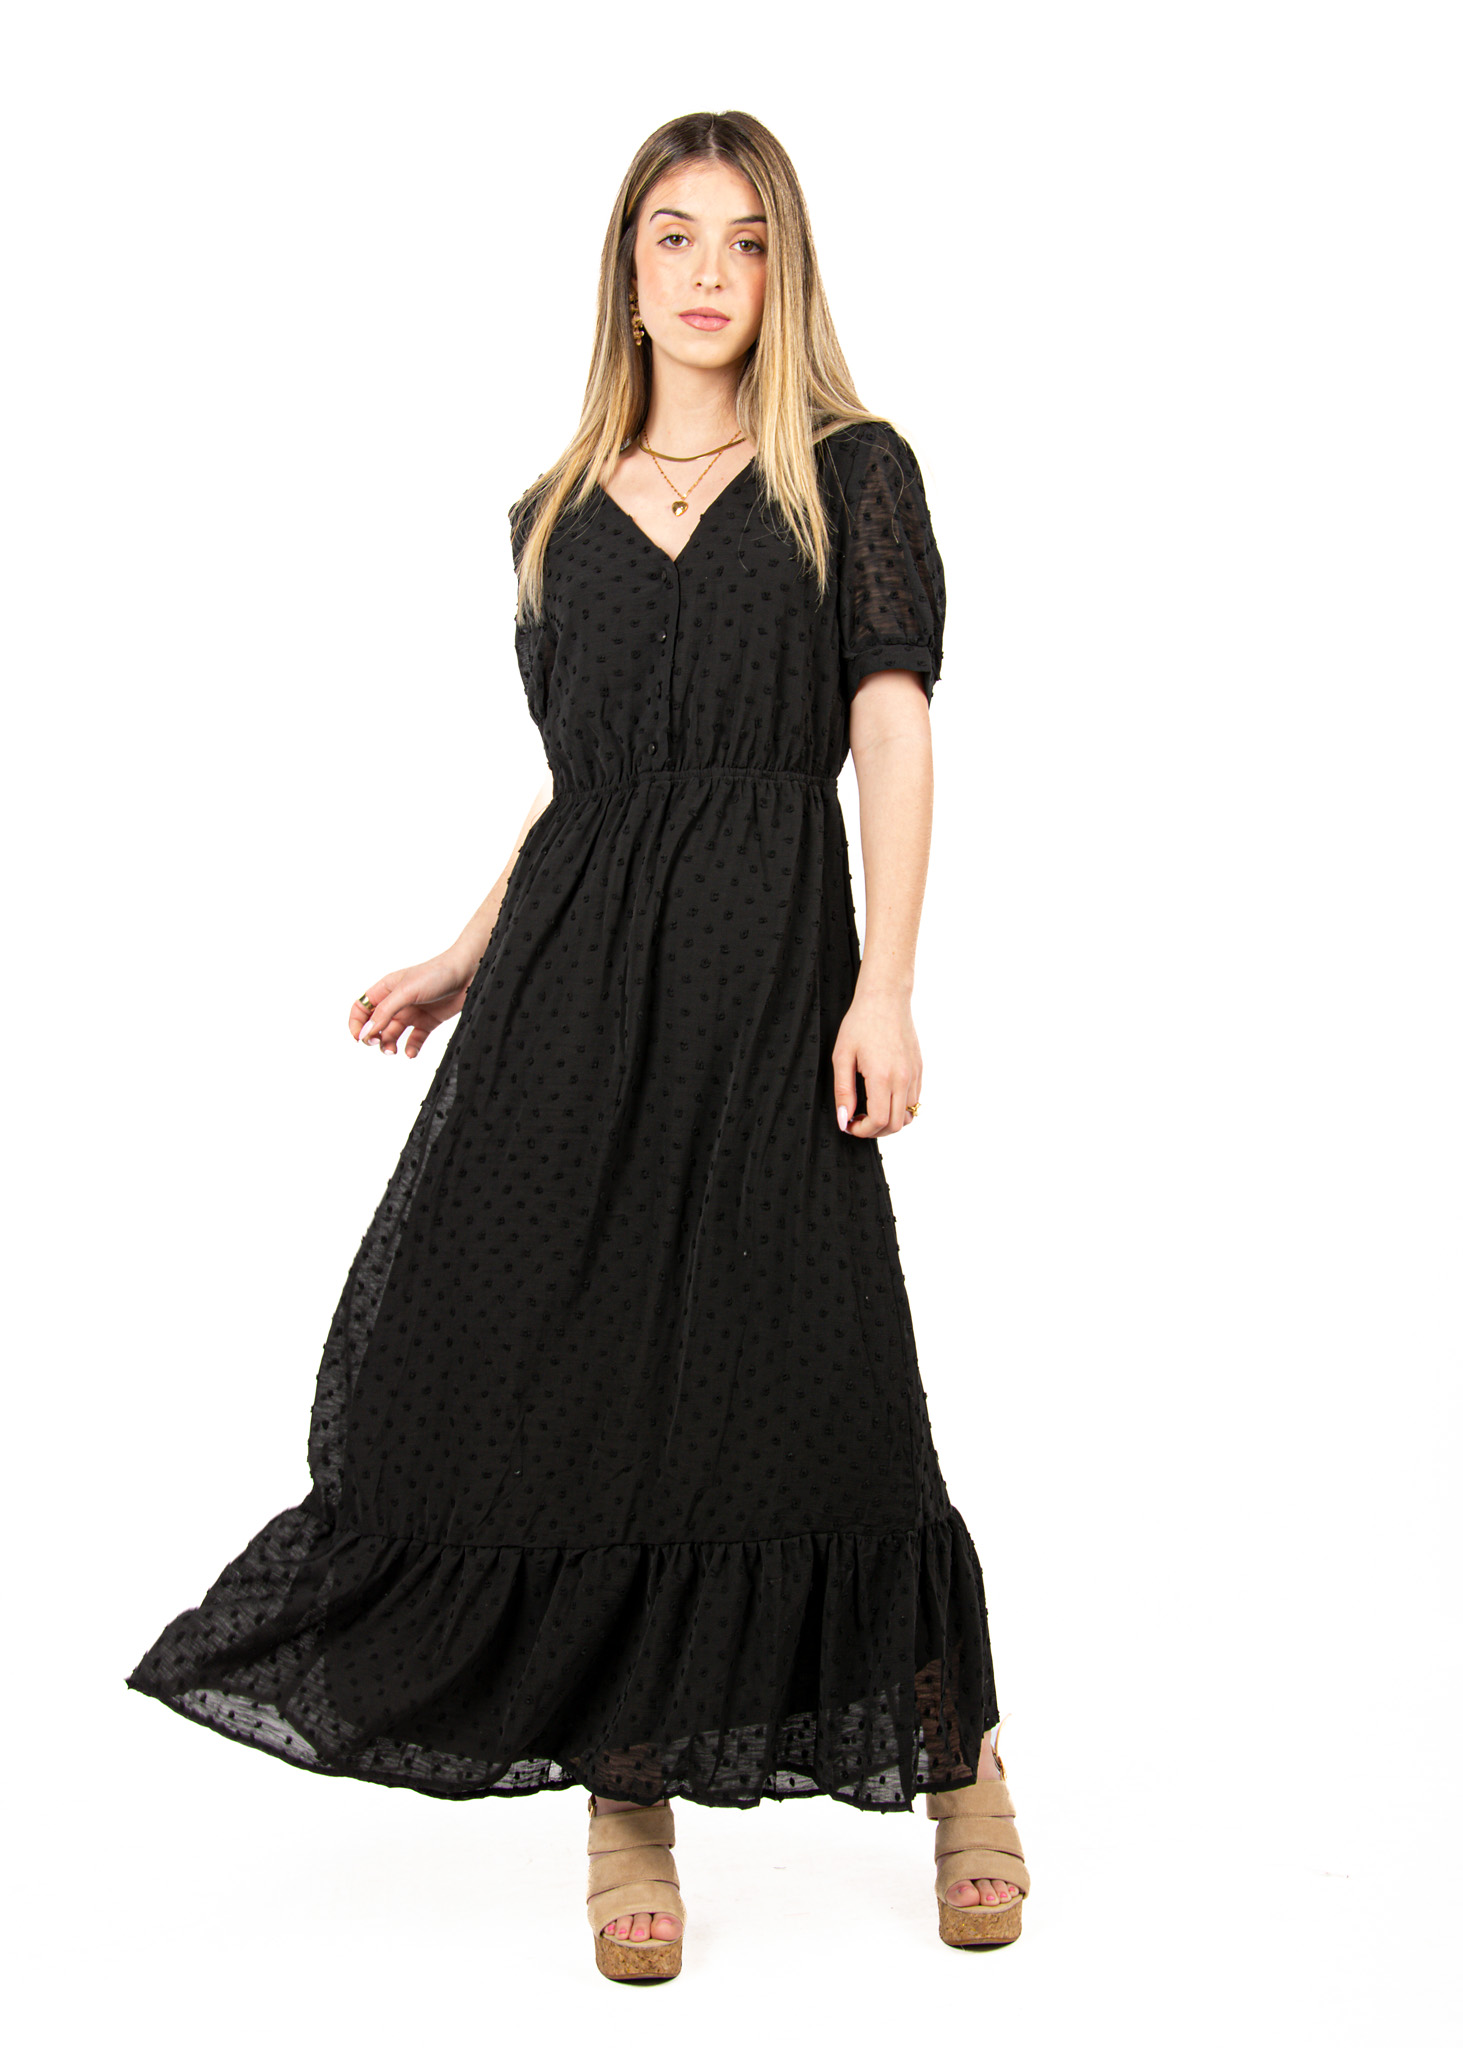 Φόρεμα Vintage Ανάγλυφο Μαύρο | EllenBoutique